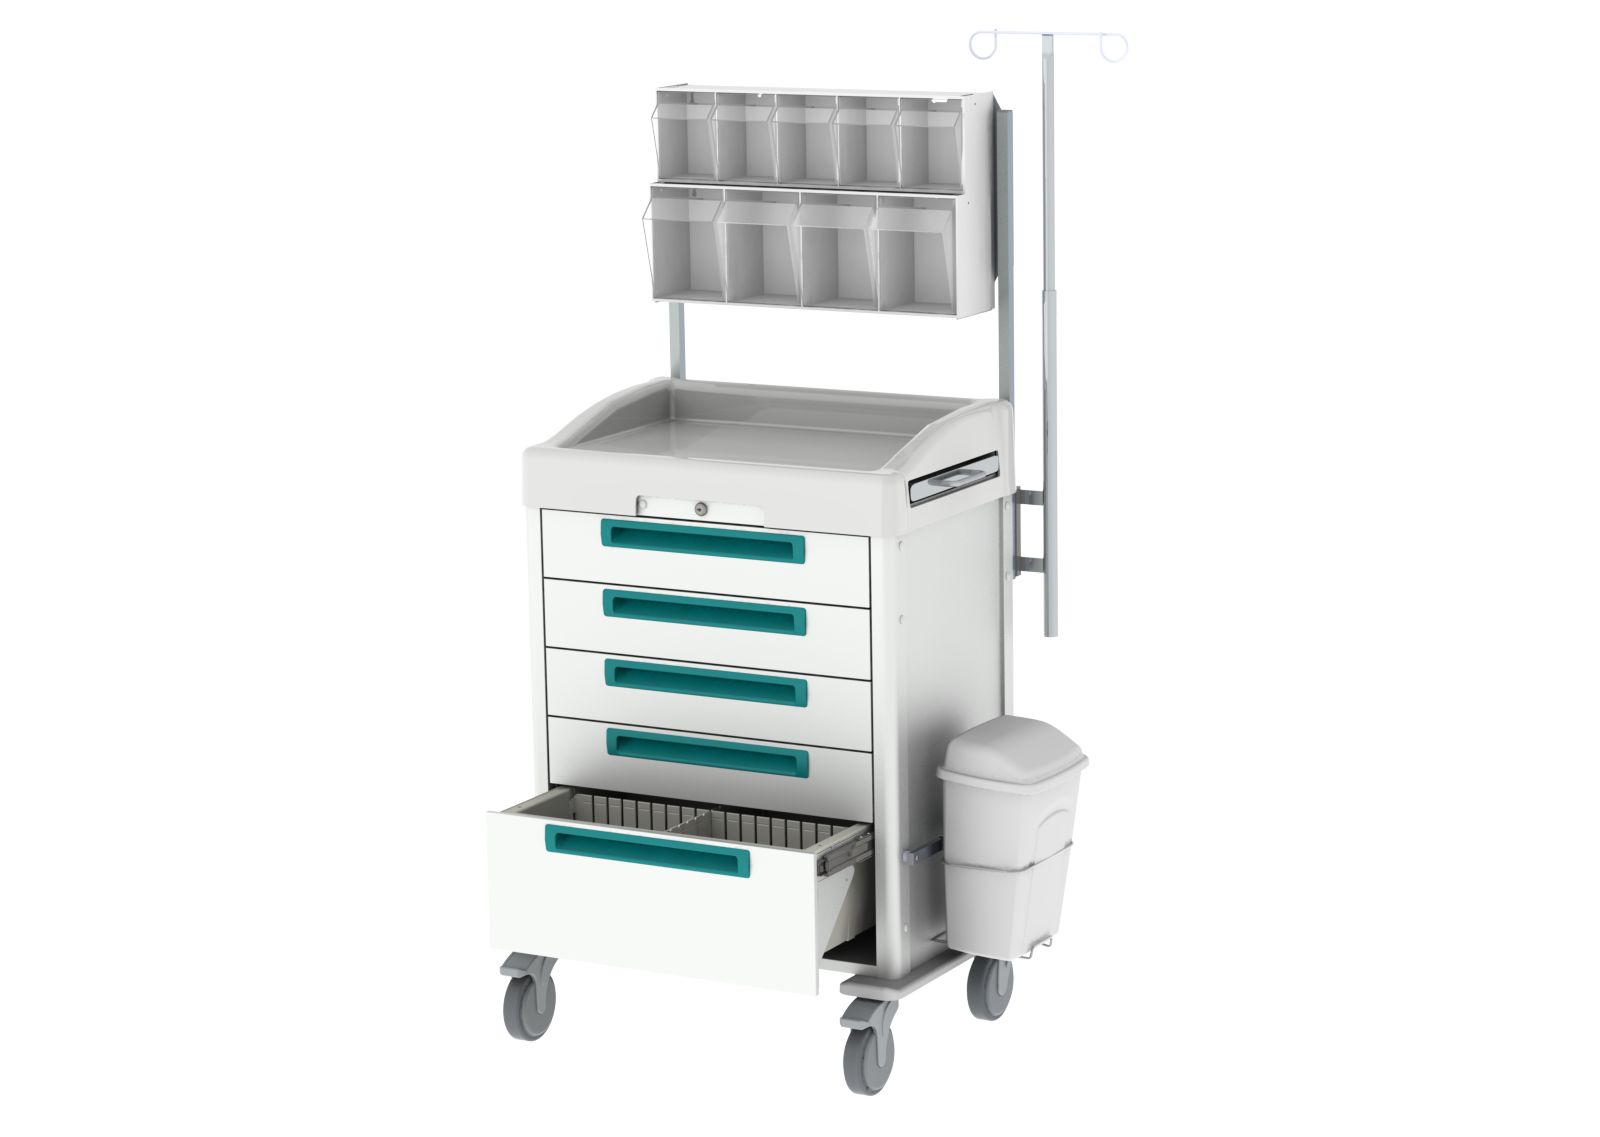 Chariot d'anesthésie et de soins intensifs, avec dispositif de verrouillage pour un stockage sécurisé des médicaments anesthésiques - JETCART_0